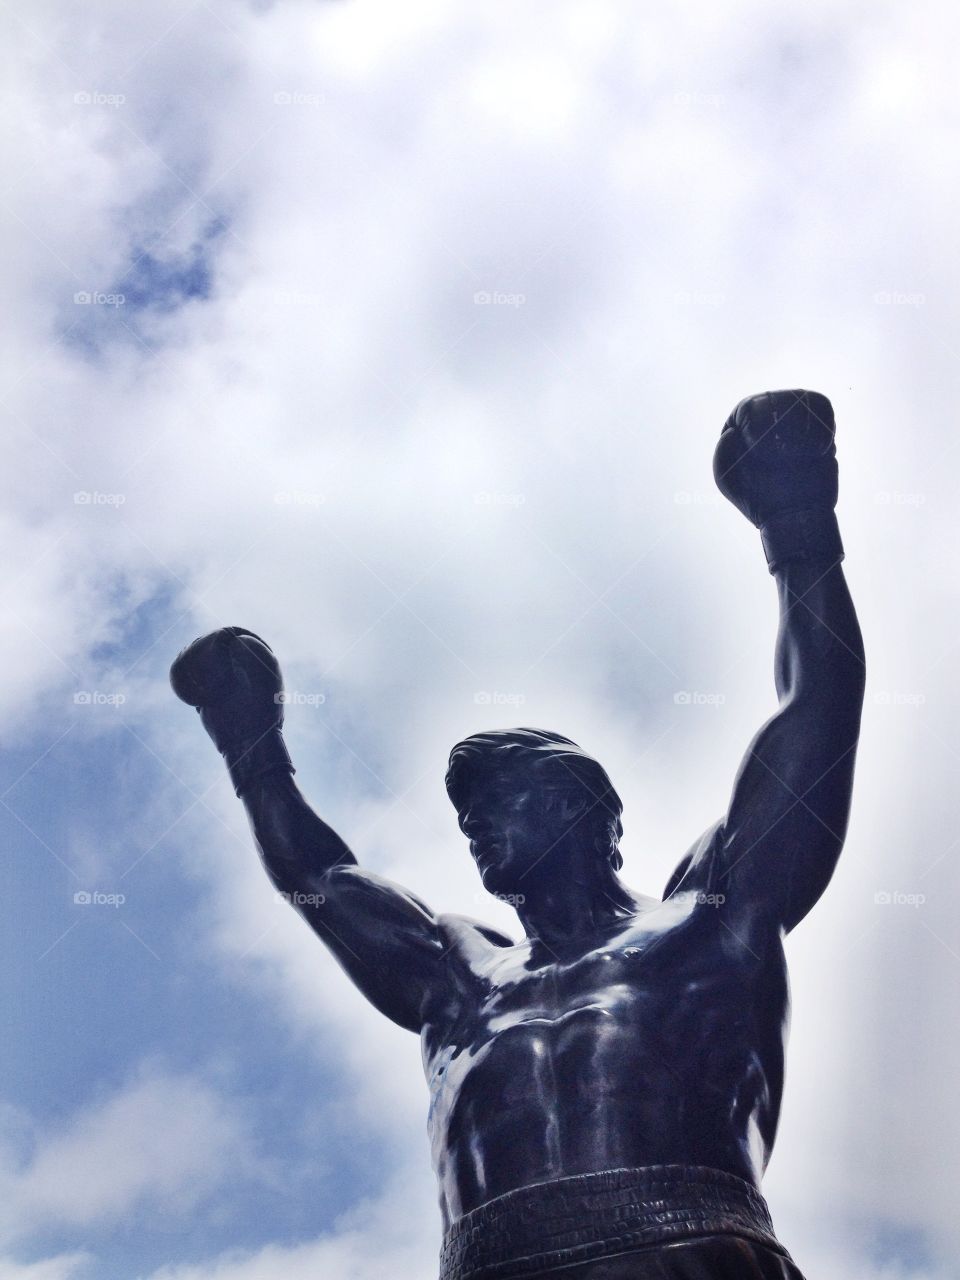 Rocky Balboa. Taken outside the Philadelphia Museum of Art.